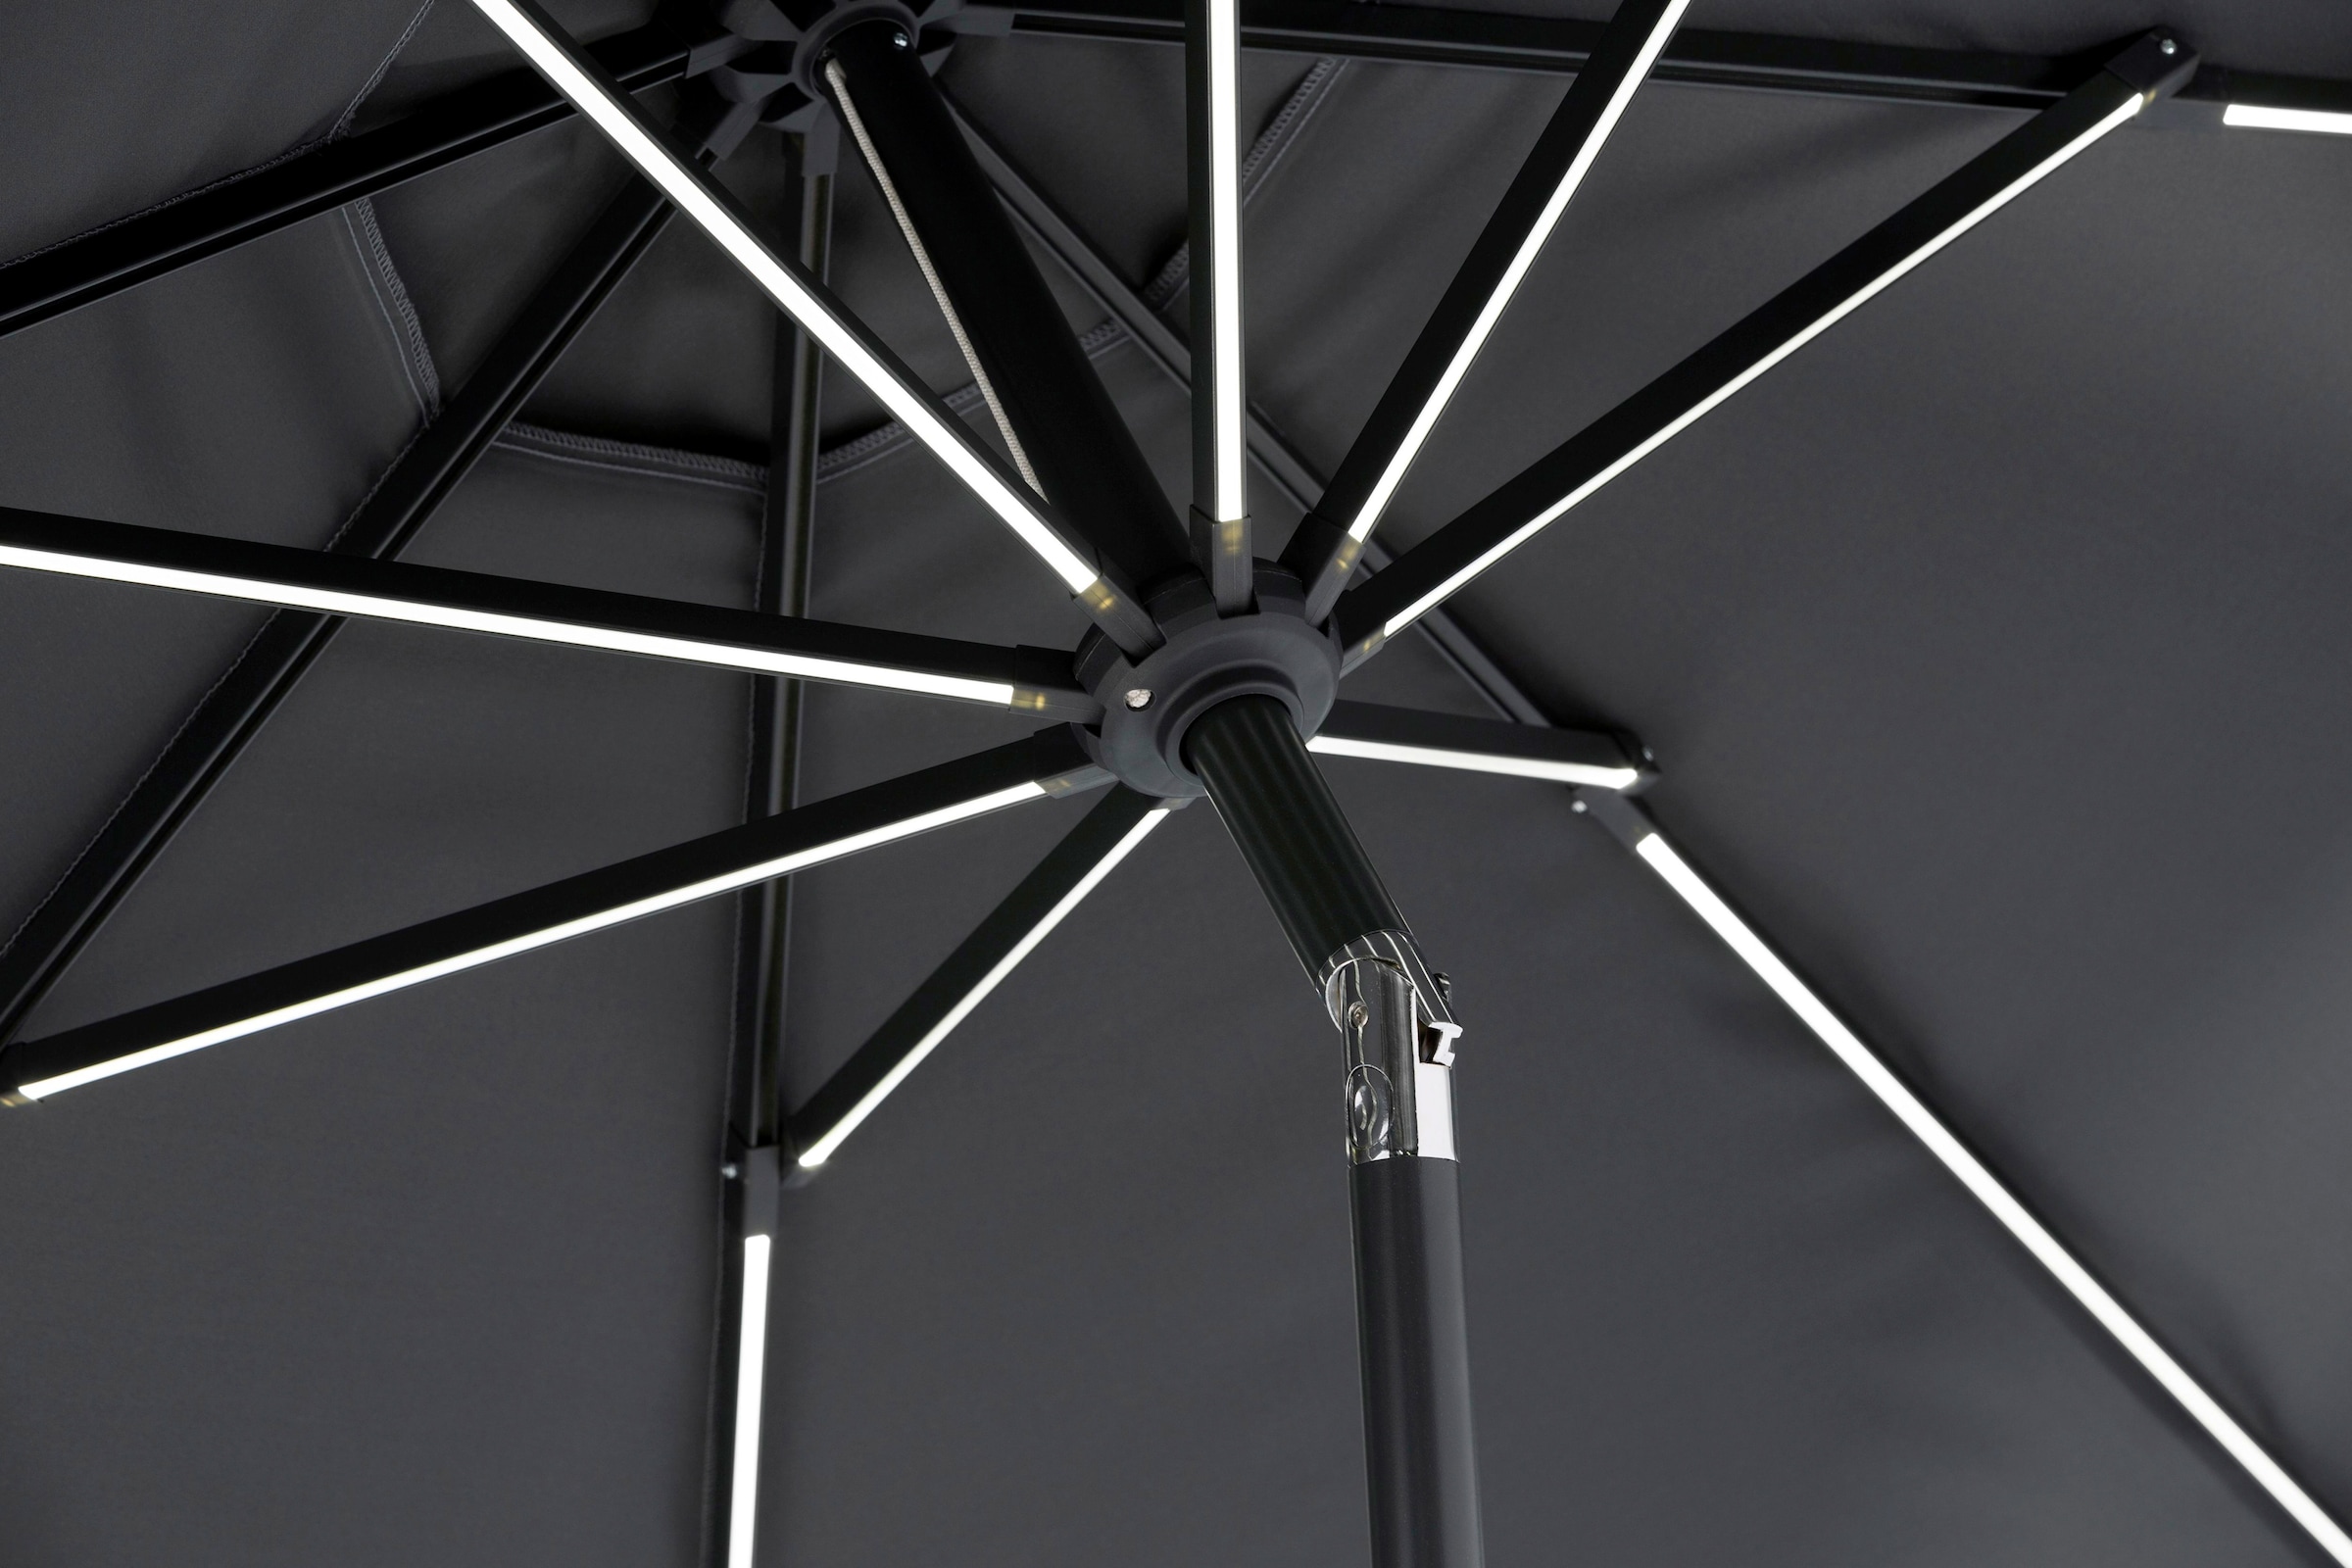 Schneider Schirme Sonnenschirm »Blacklight it«, ohne Schirmständer